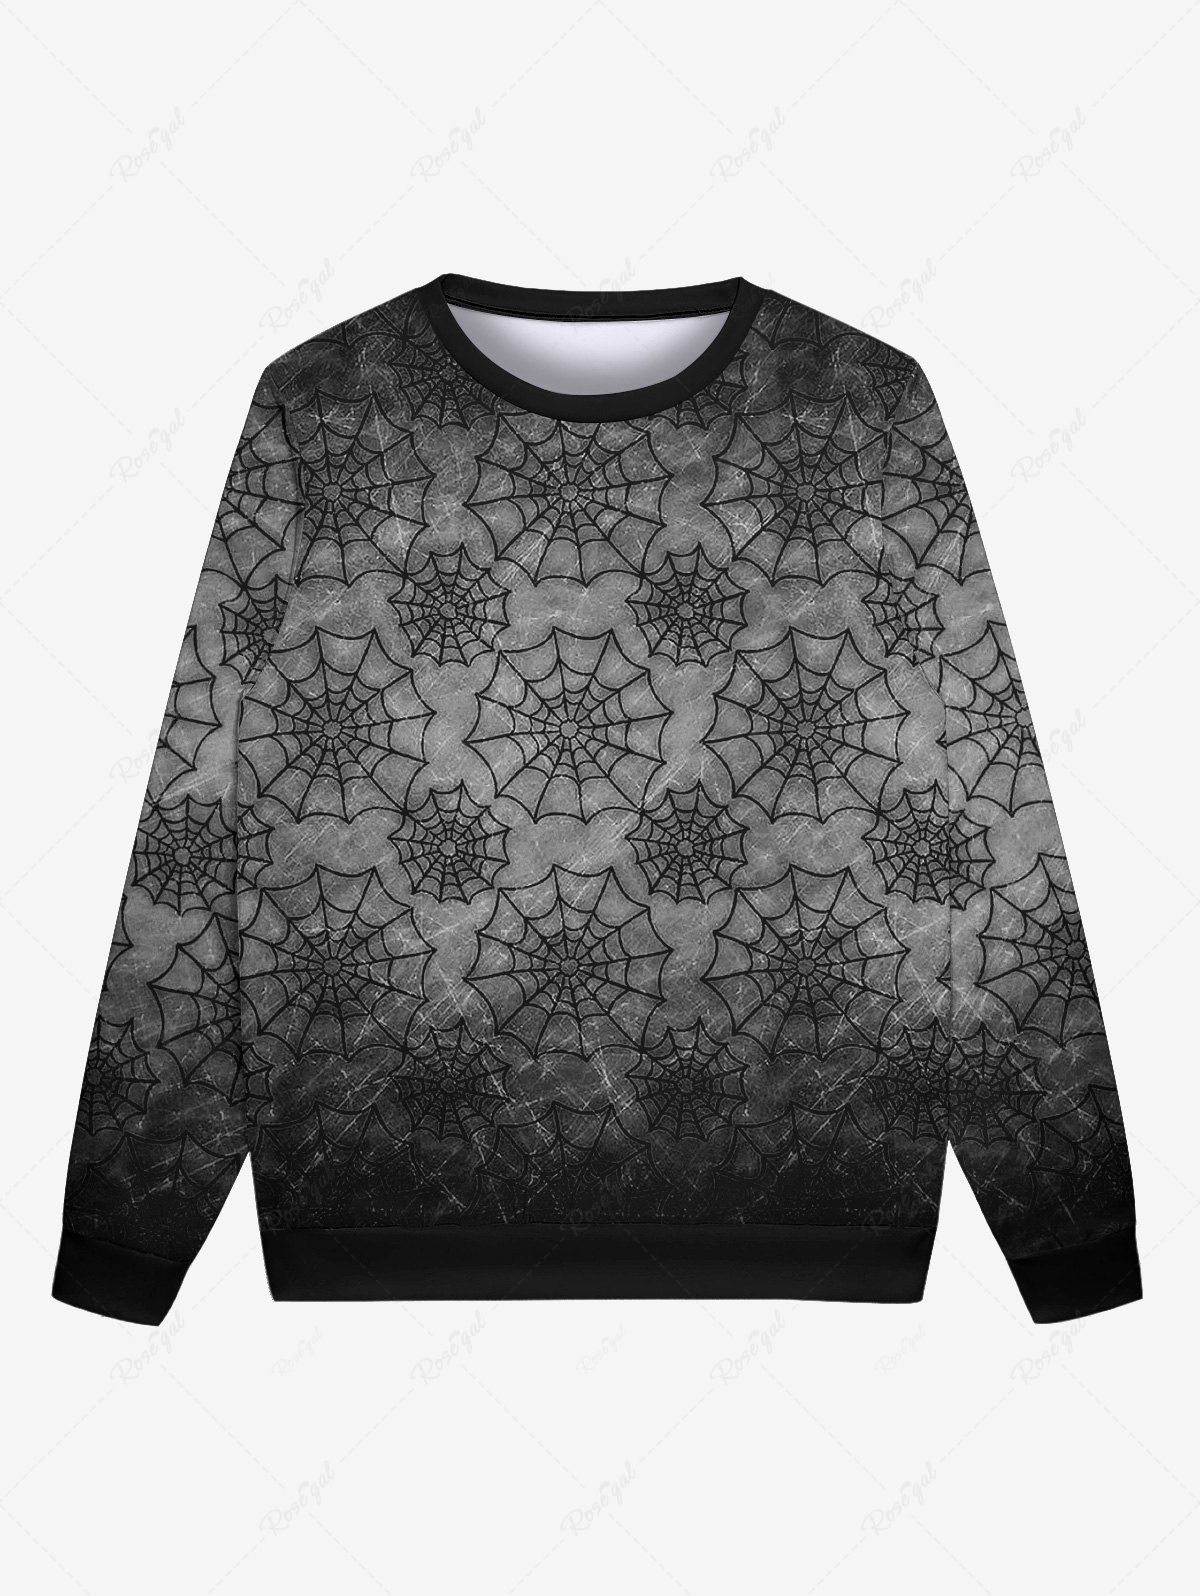 Best Gothic Halloween Spider Web Print Sweatshirt For Men  